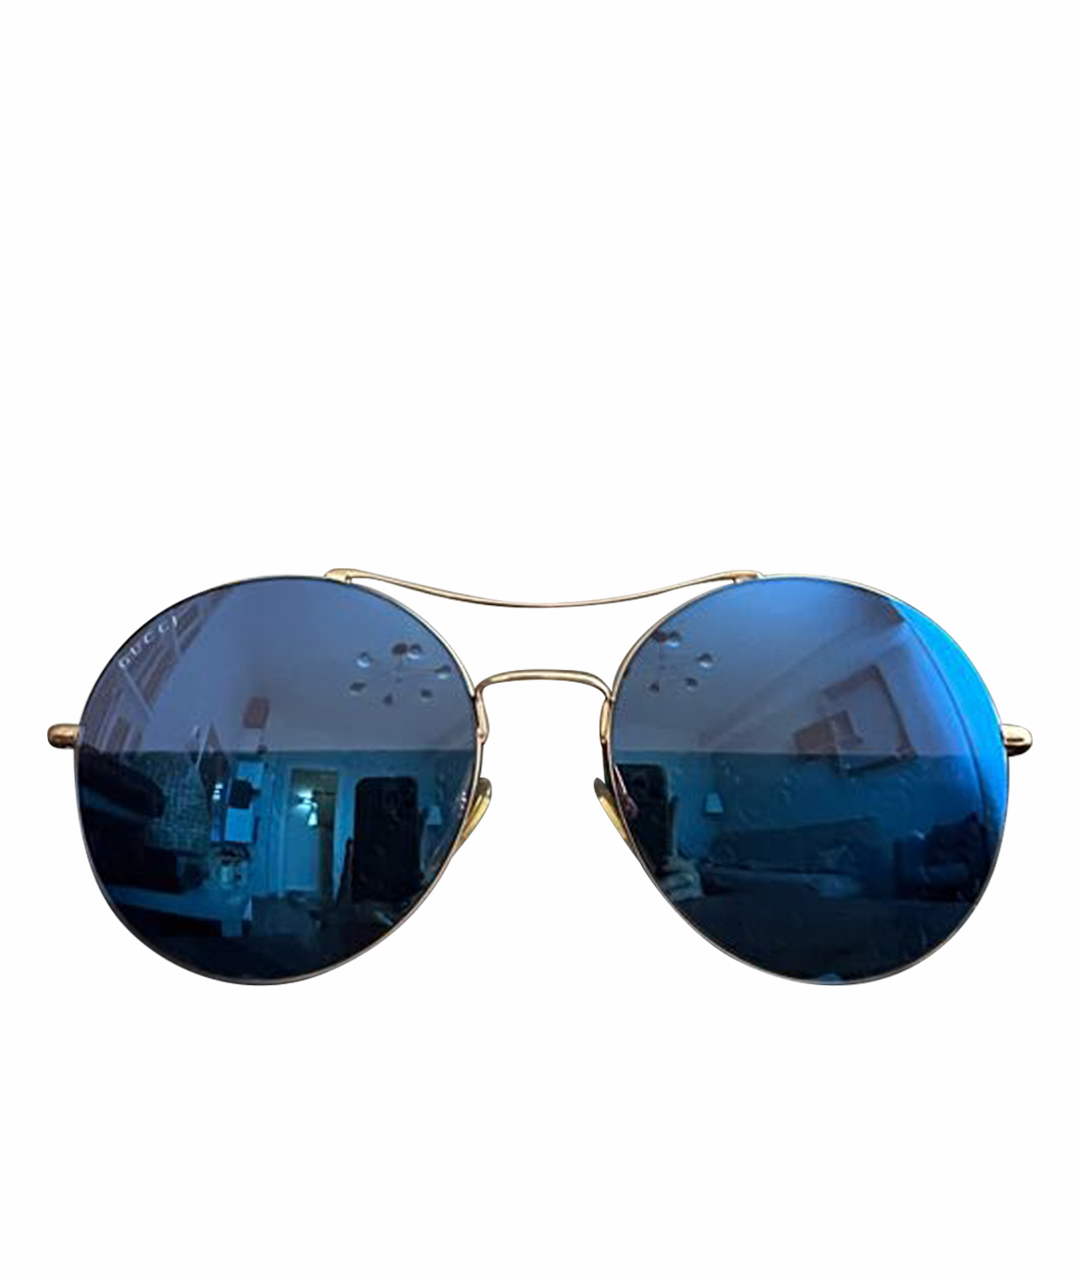 GUCCI Золотые металлические солнцезащитные очки, фото 1